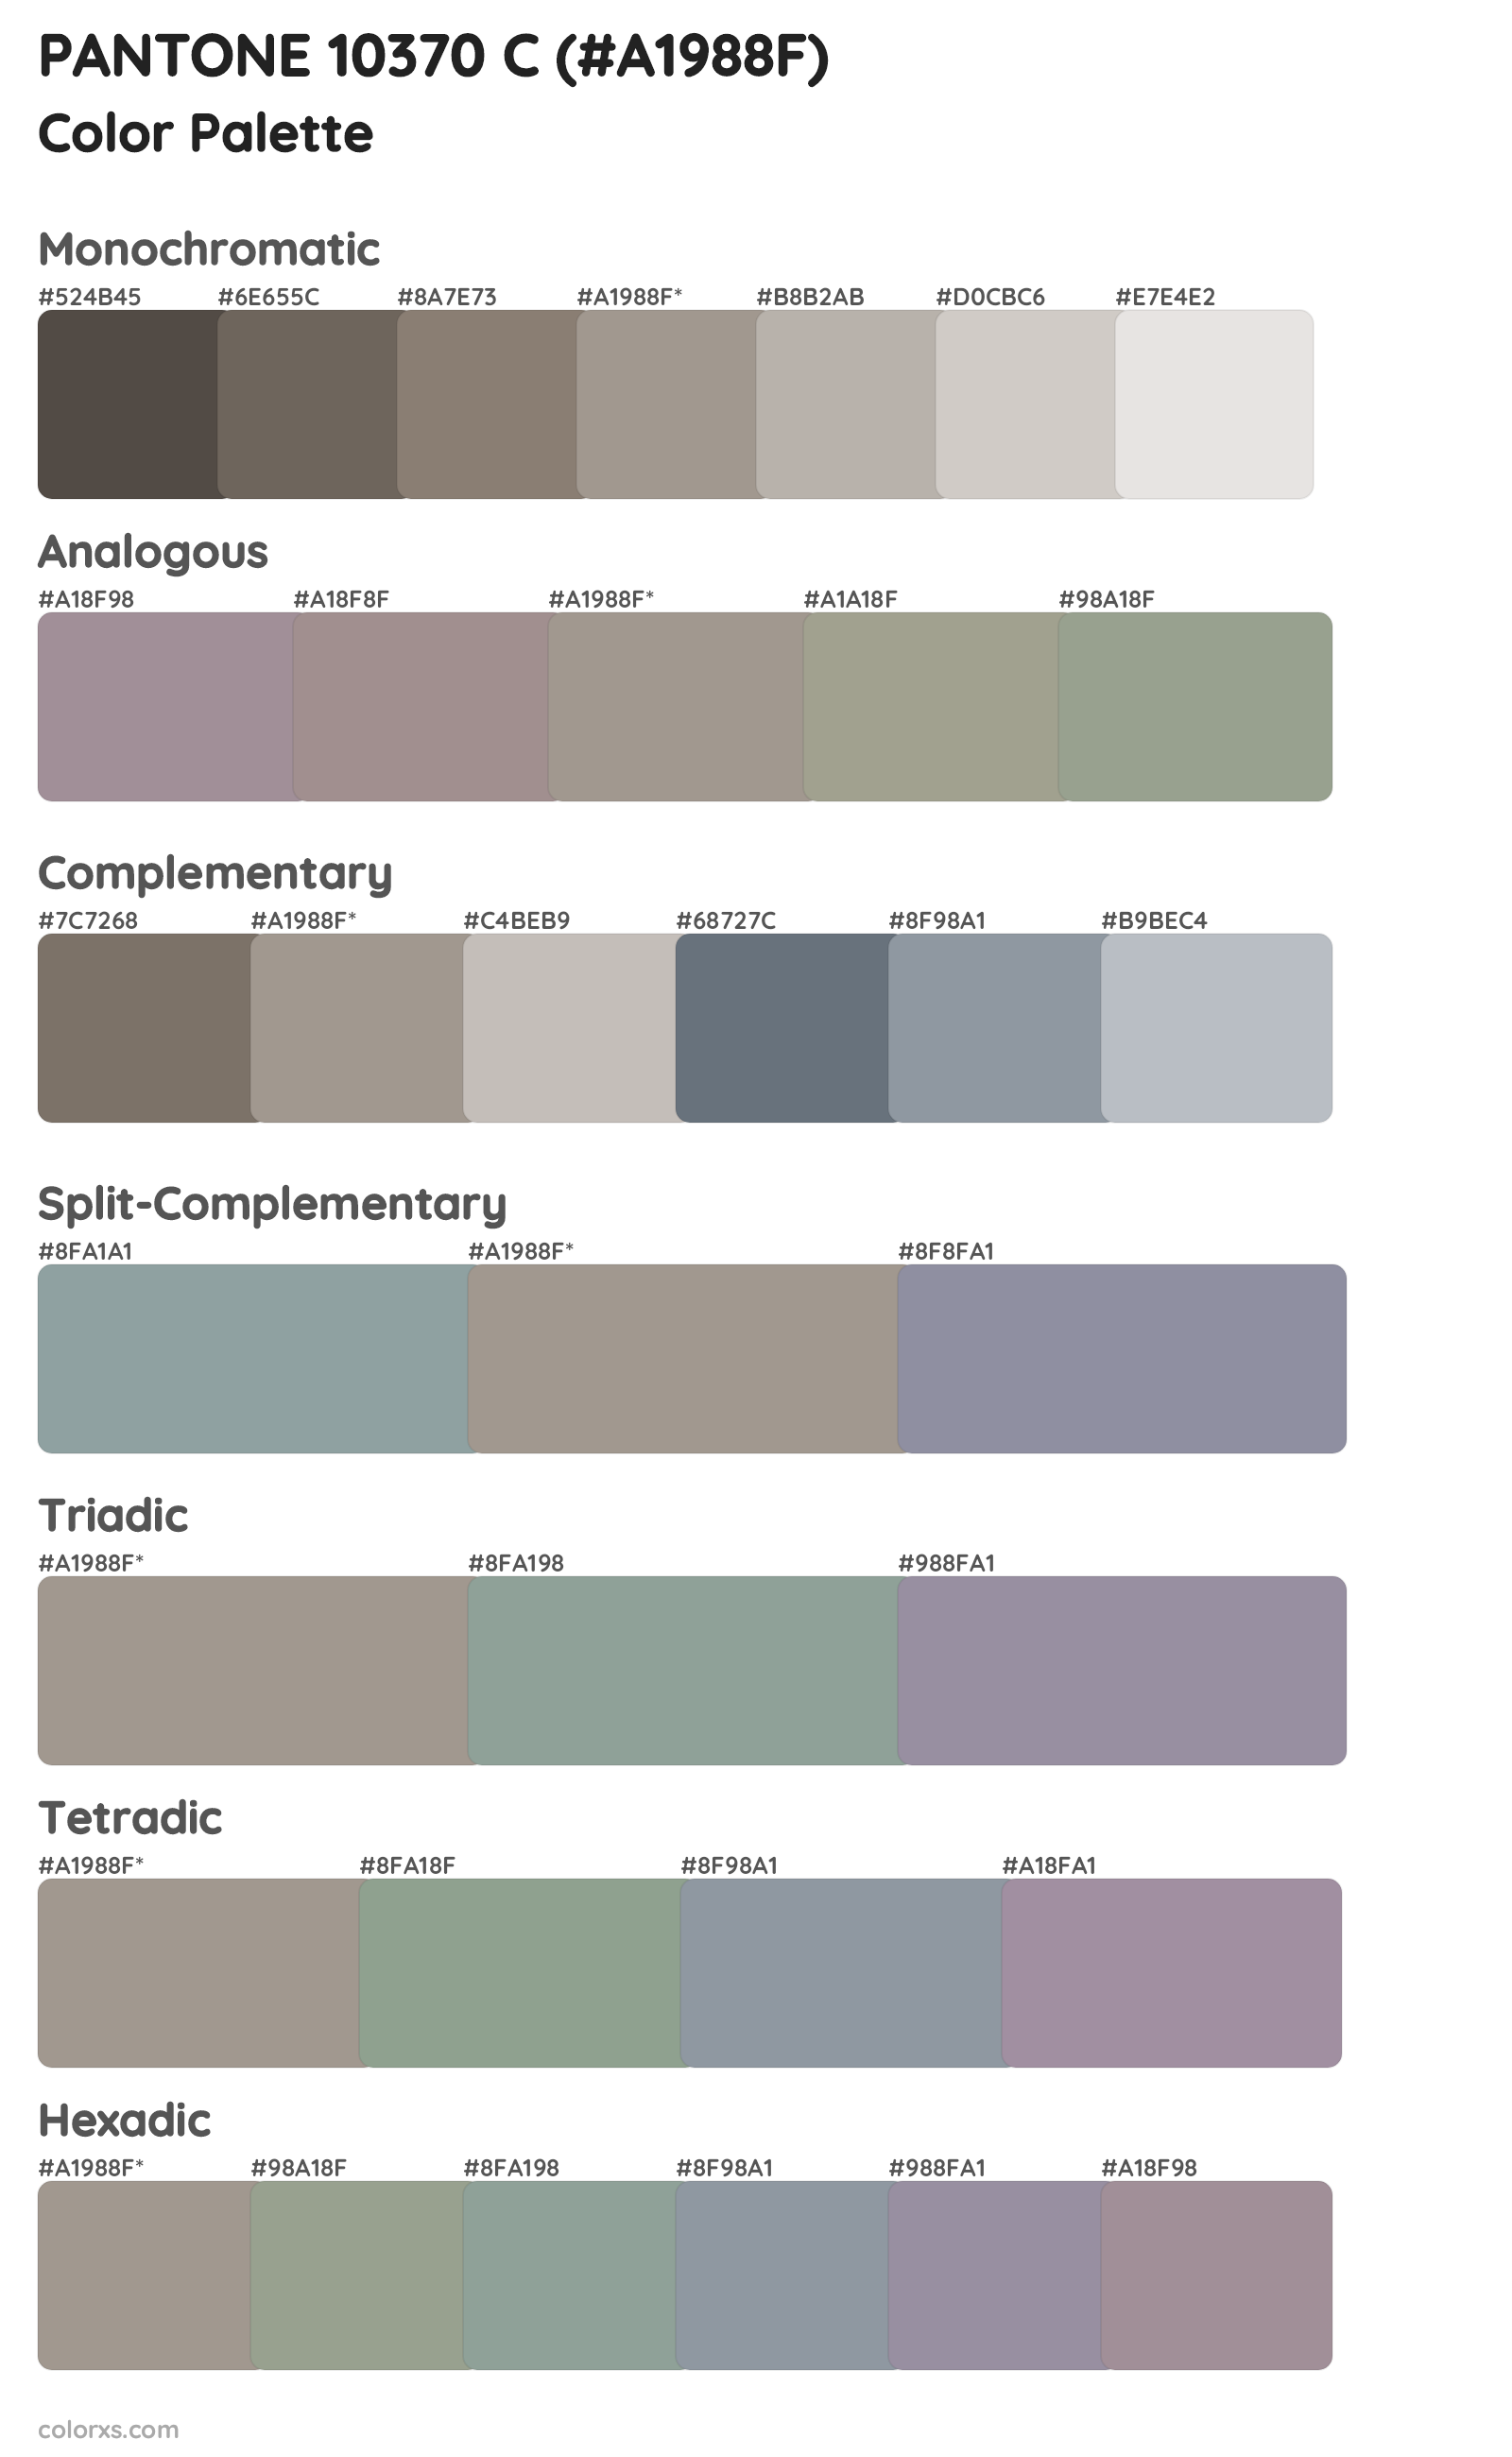 PANTONE 10370 C Color Scheme Palettes